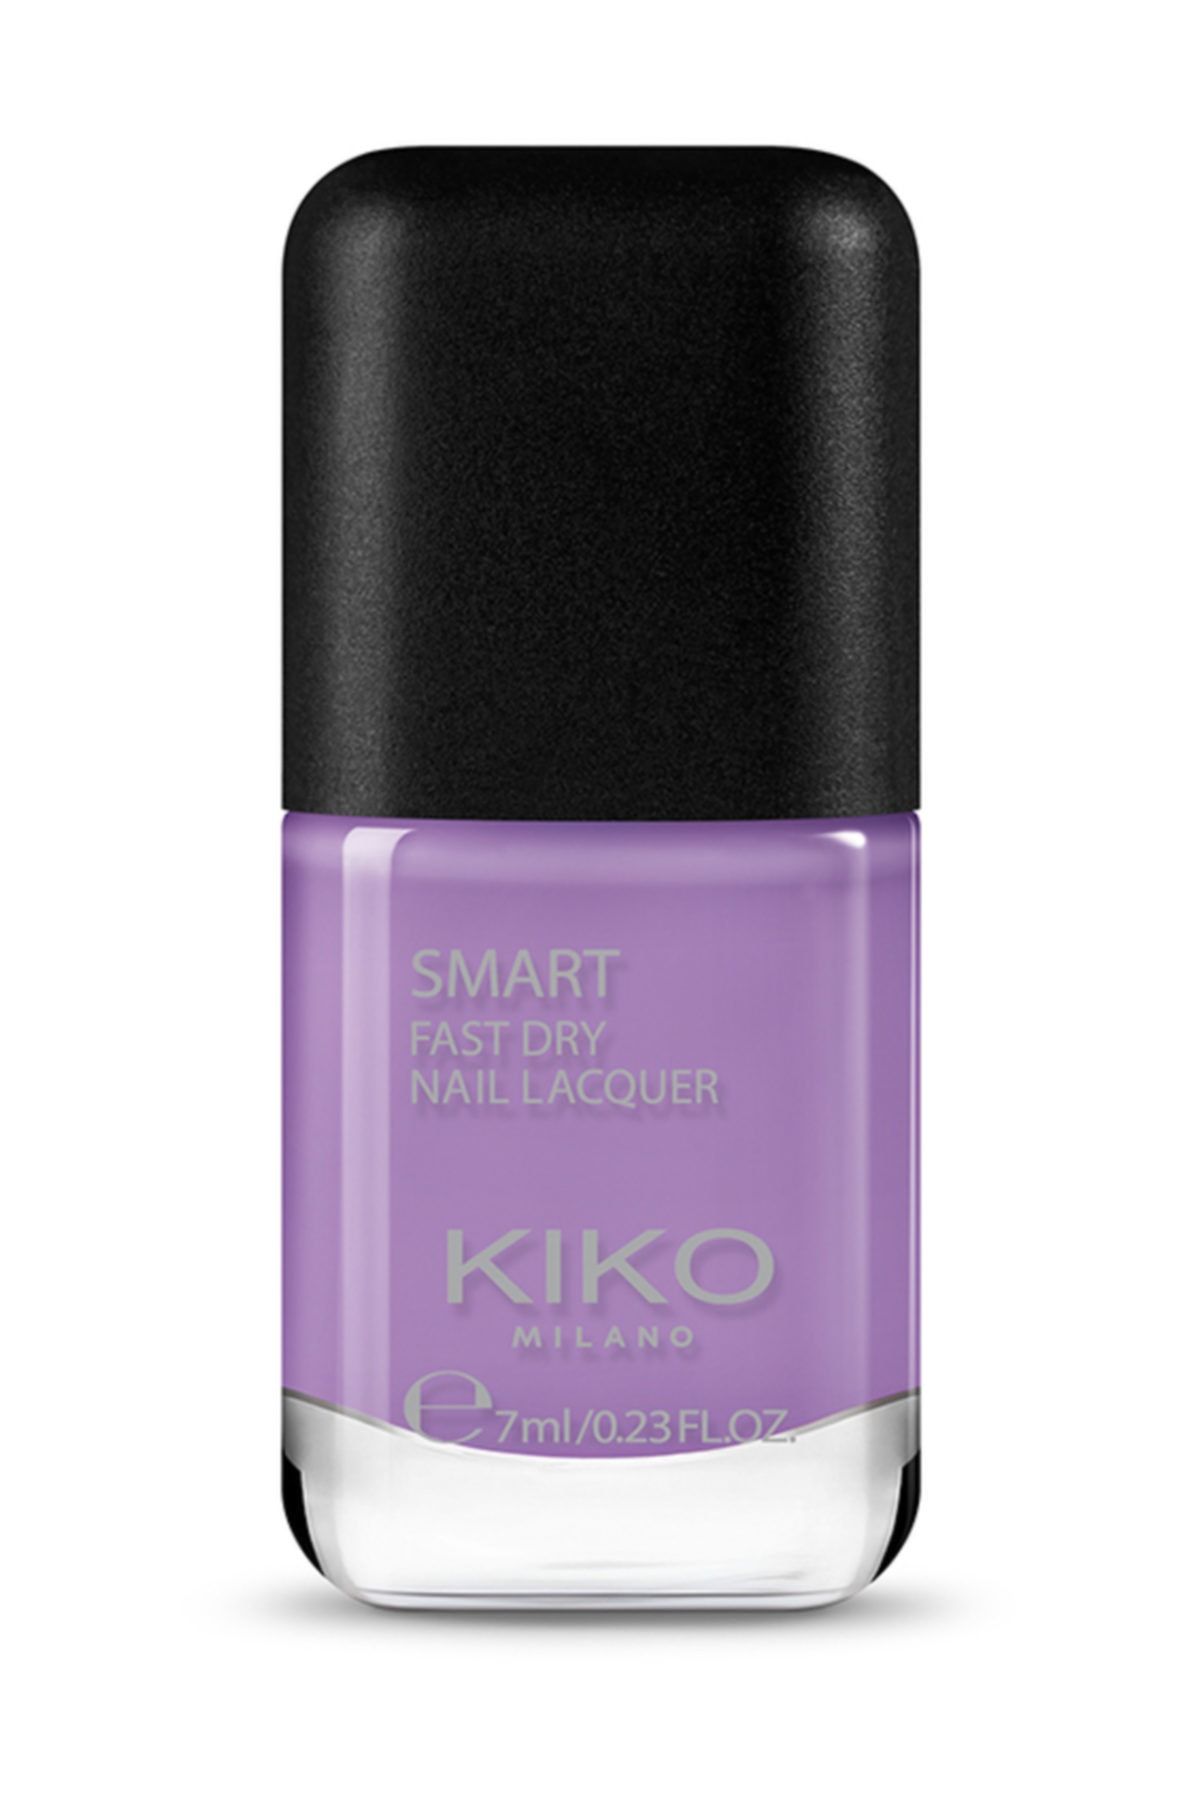 KIKO Smart Fast Dry Nail Lacquer 77 Oje